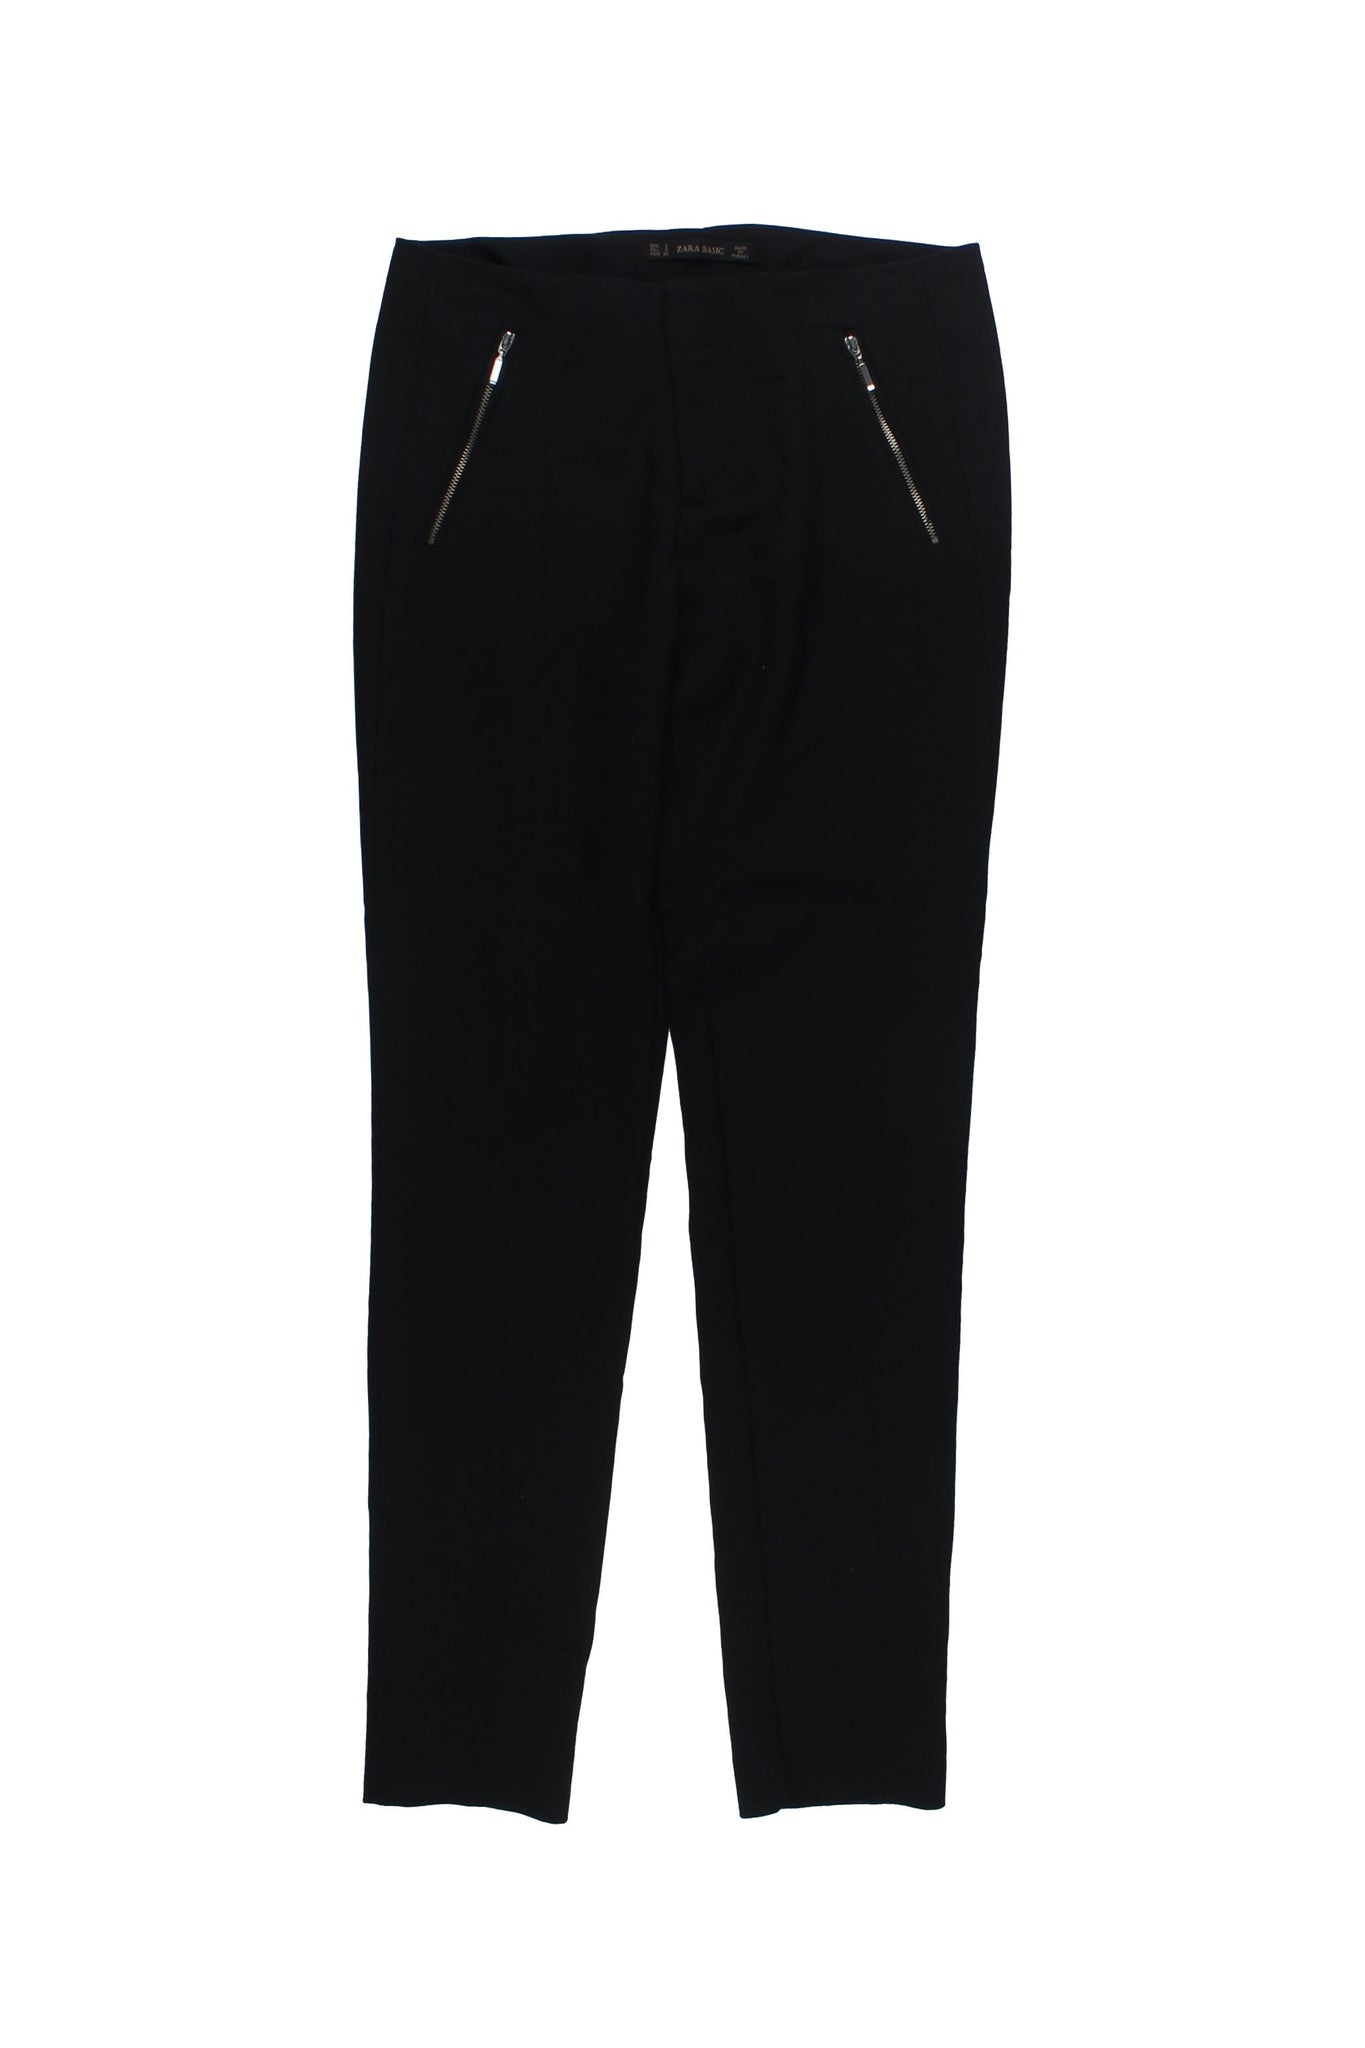 ZARA - Pantalones Color Negro Con Detalle De Cierres